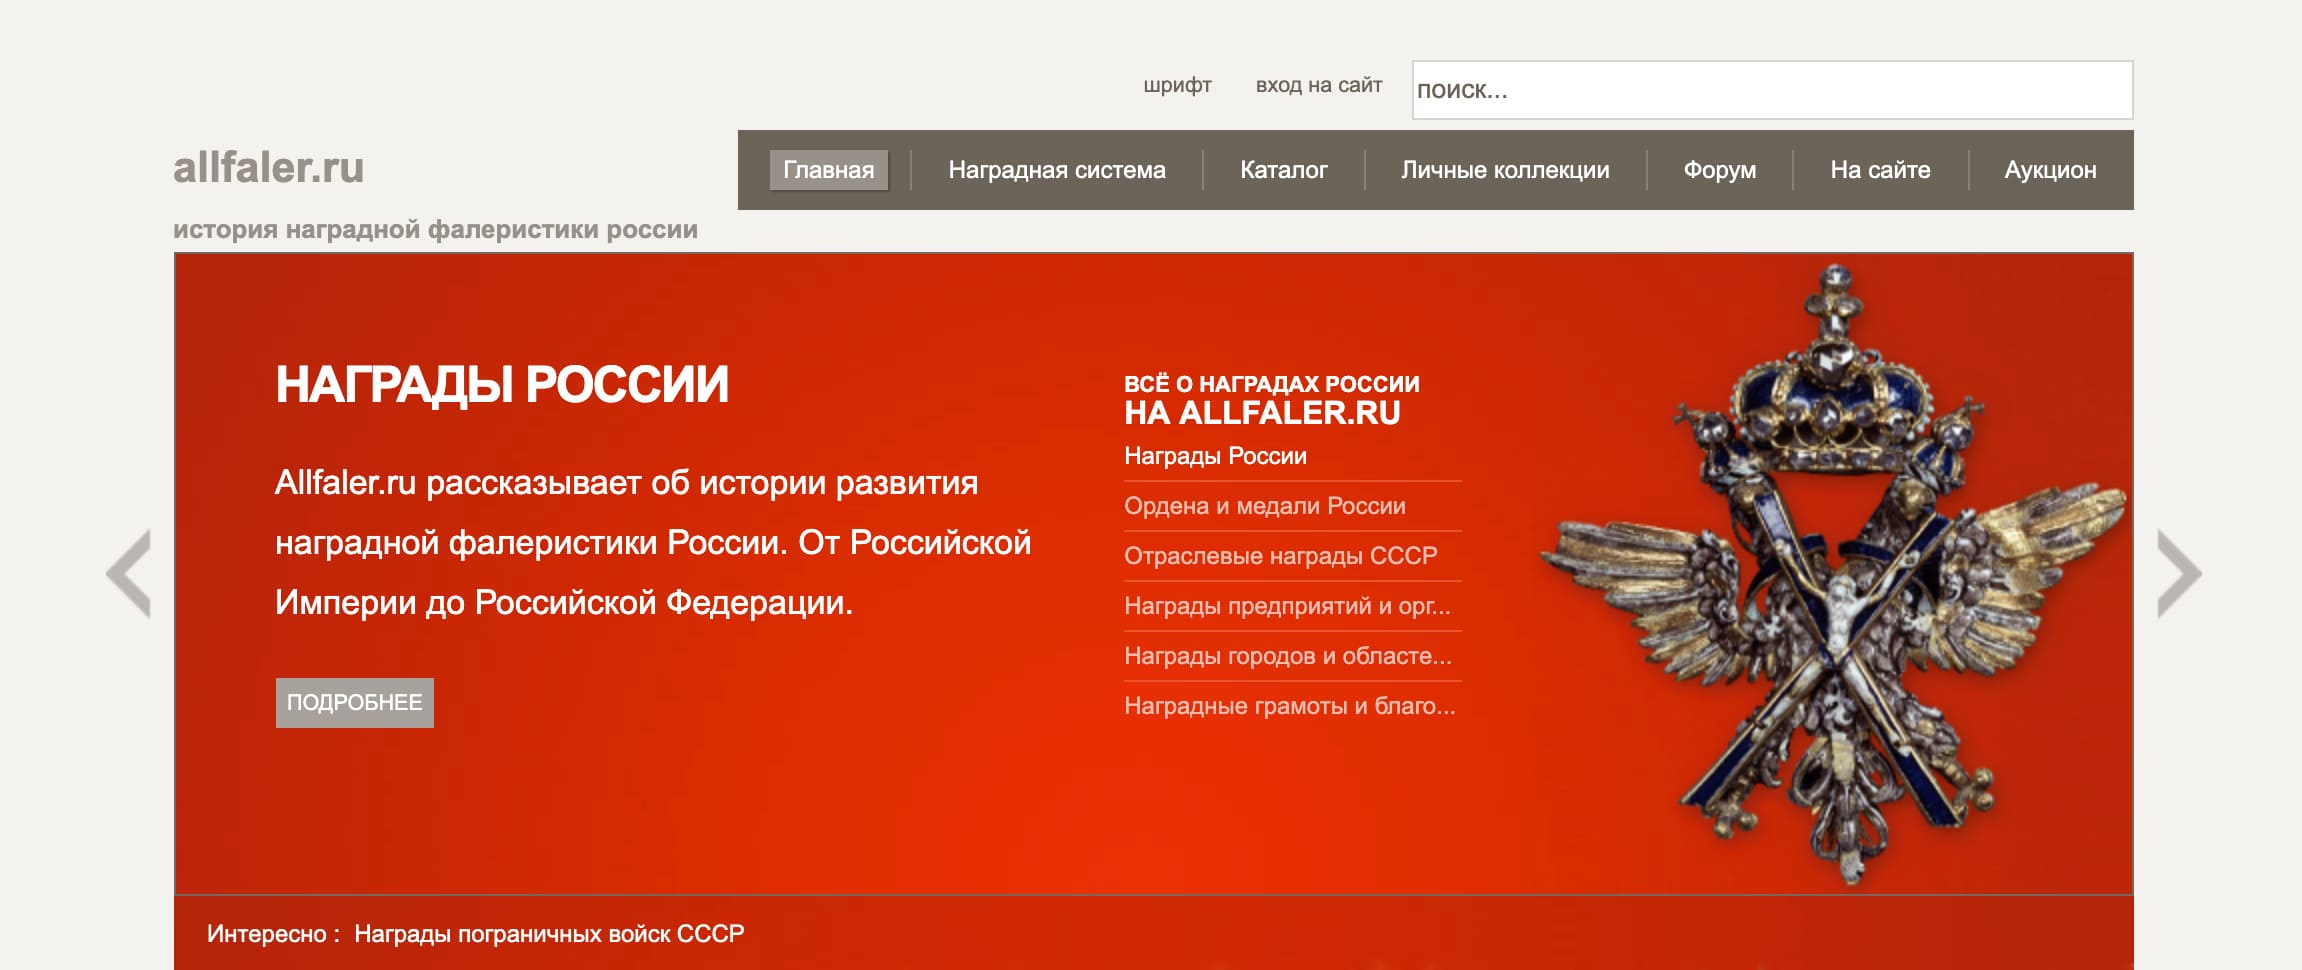 Сайт allfaler.ru